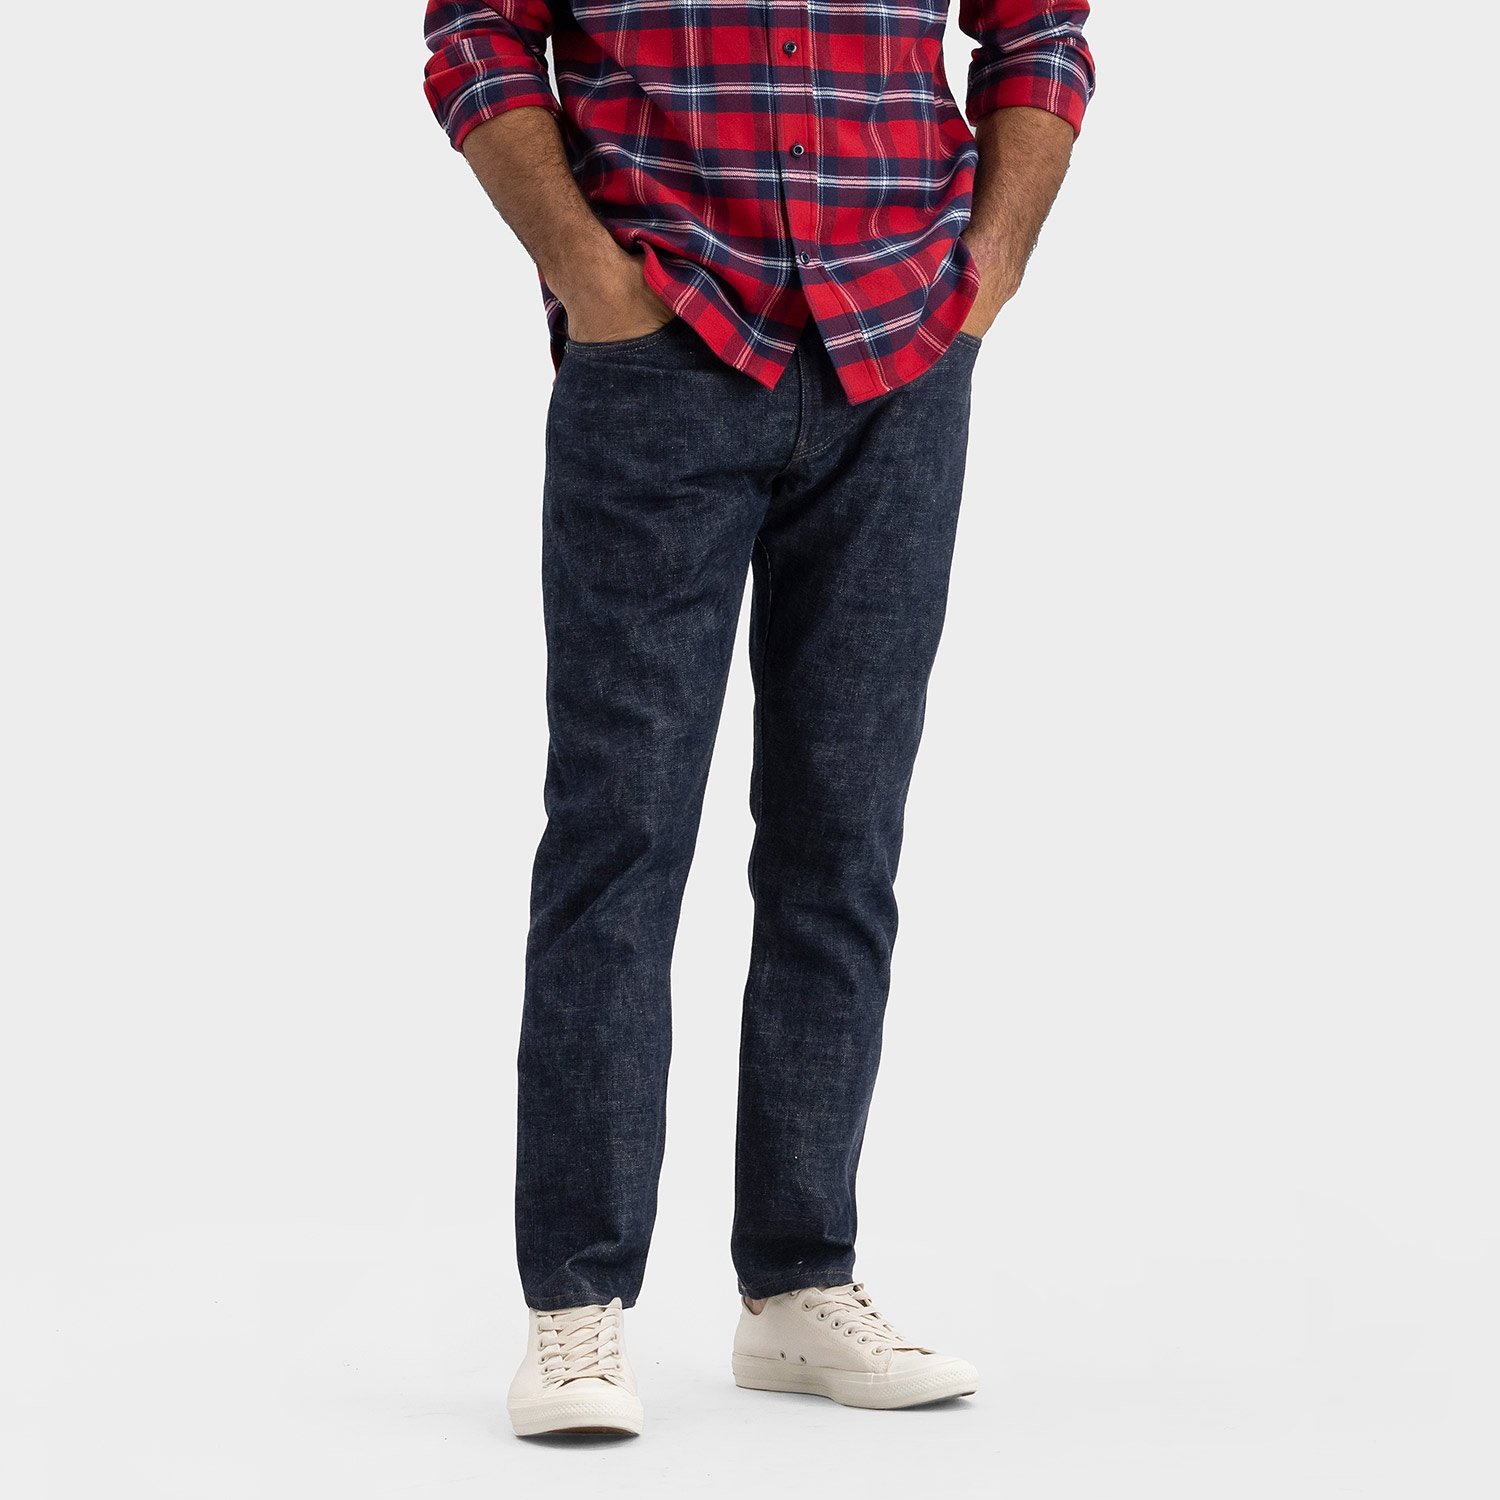 Men's Skinny Selvedge Custom Made Jeans